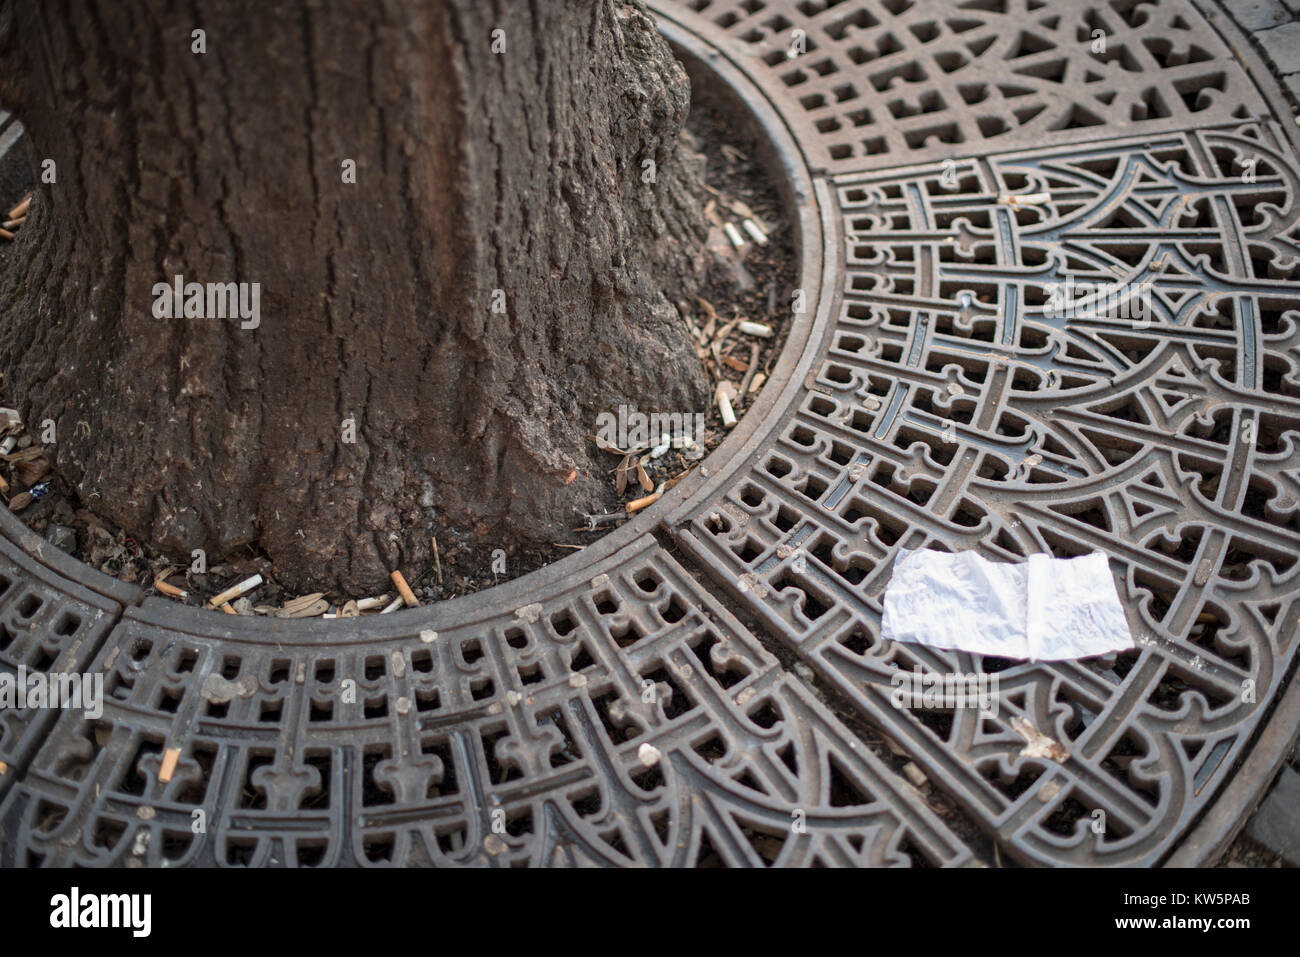 Close-up de détritus autour d'une grille d'ornement autour d'un arbre de la rue dans une ville dotée d'un morceau de tissu et de mégots de cigarettes Banque D'Images